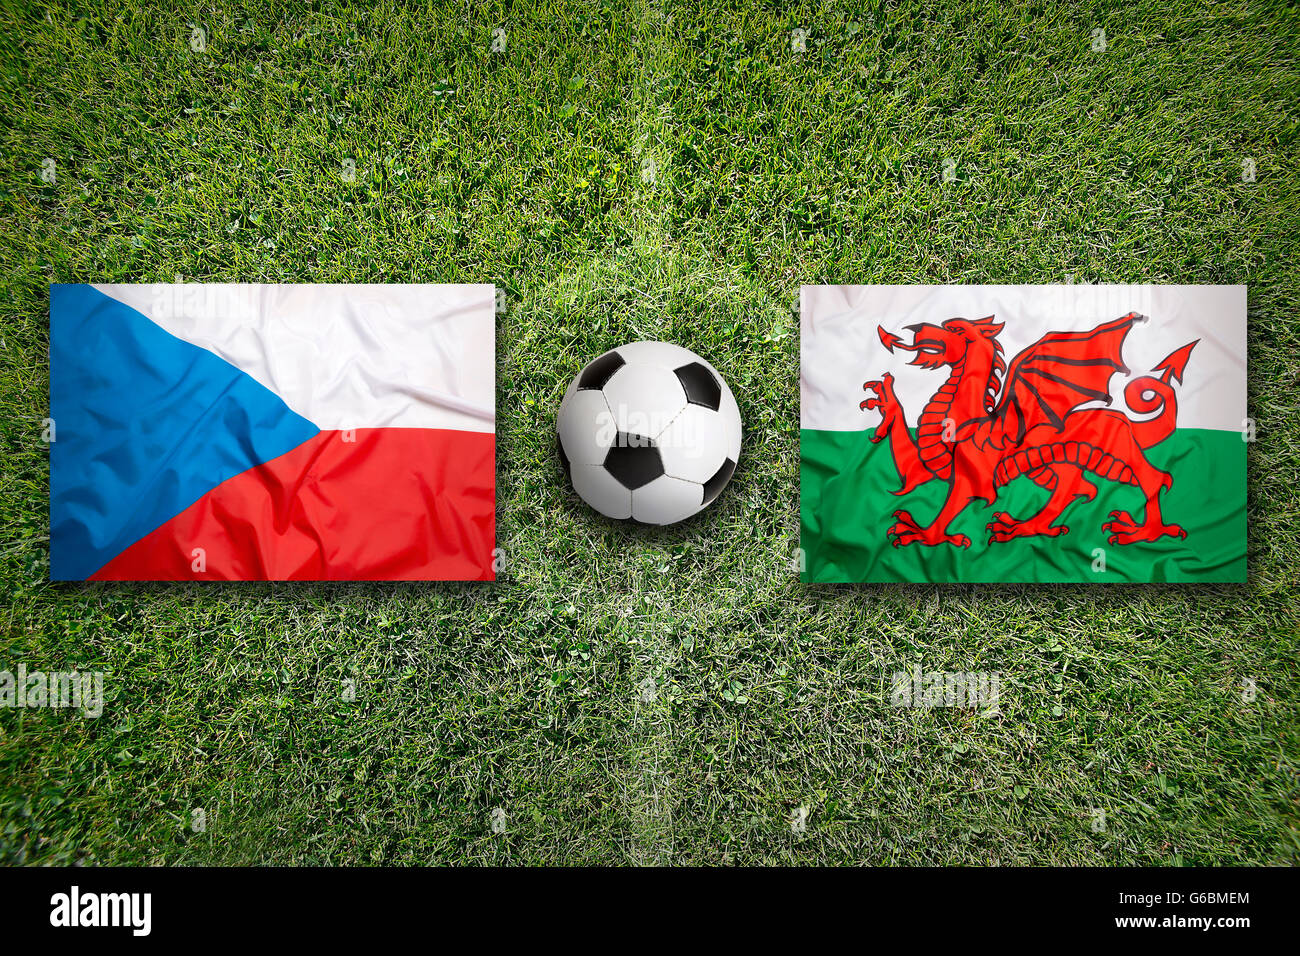 Czech Republic vs. Wales flags on green soccer field Stock Photo